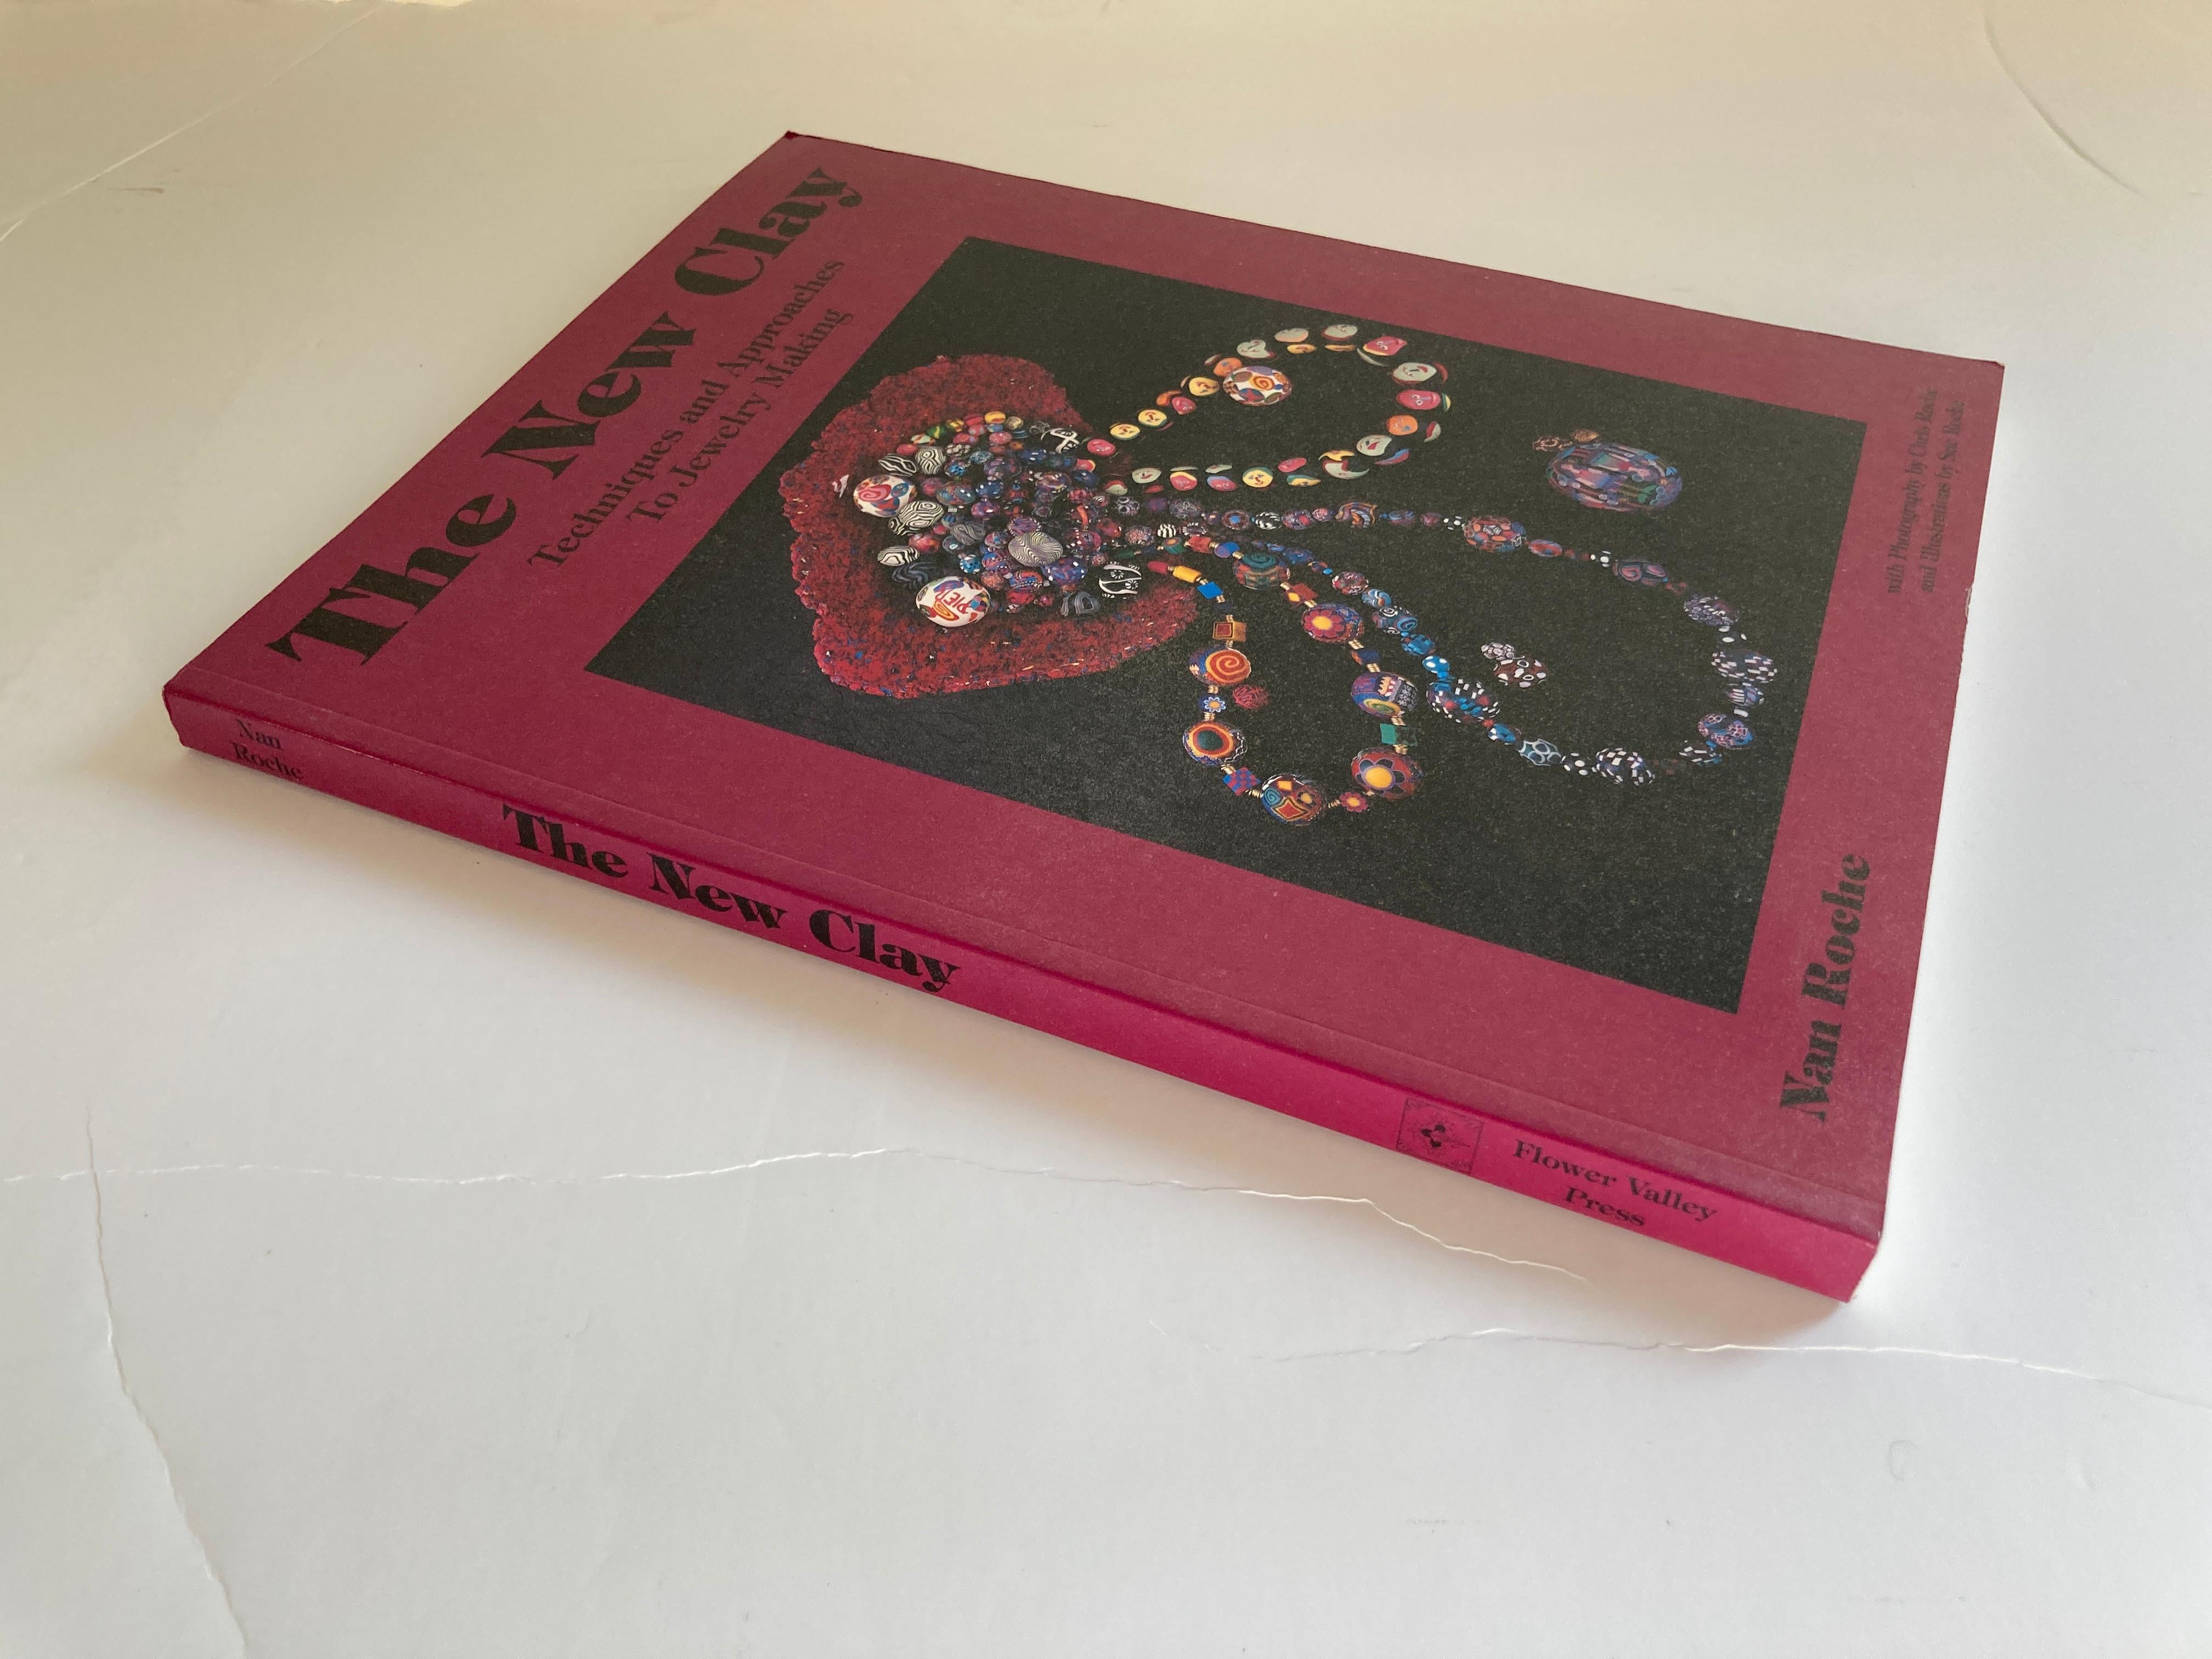 The New Clay : Techniques and Approaches to Jewelry Making.
Un livre merveilleux, avec plus de 100 photos couleur, sur la fabrication de perles et de bijoux complexes à l'aide d'argiles de modelage telles que 